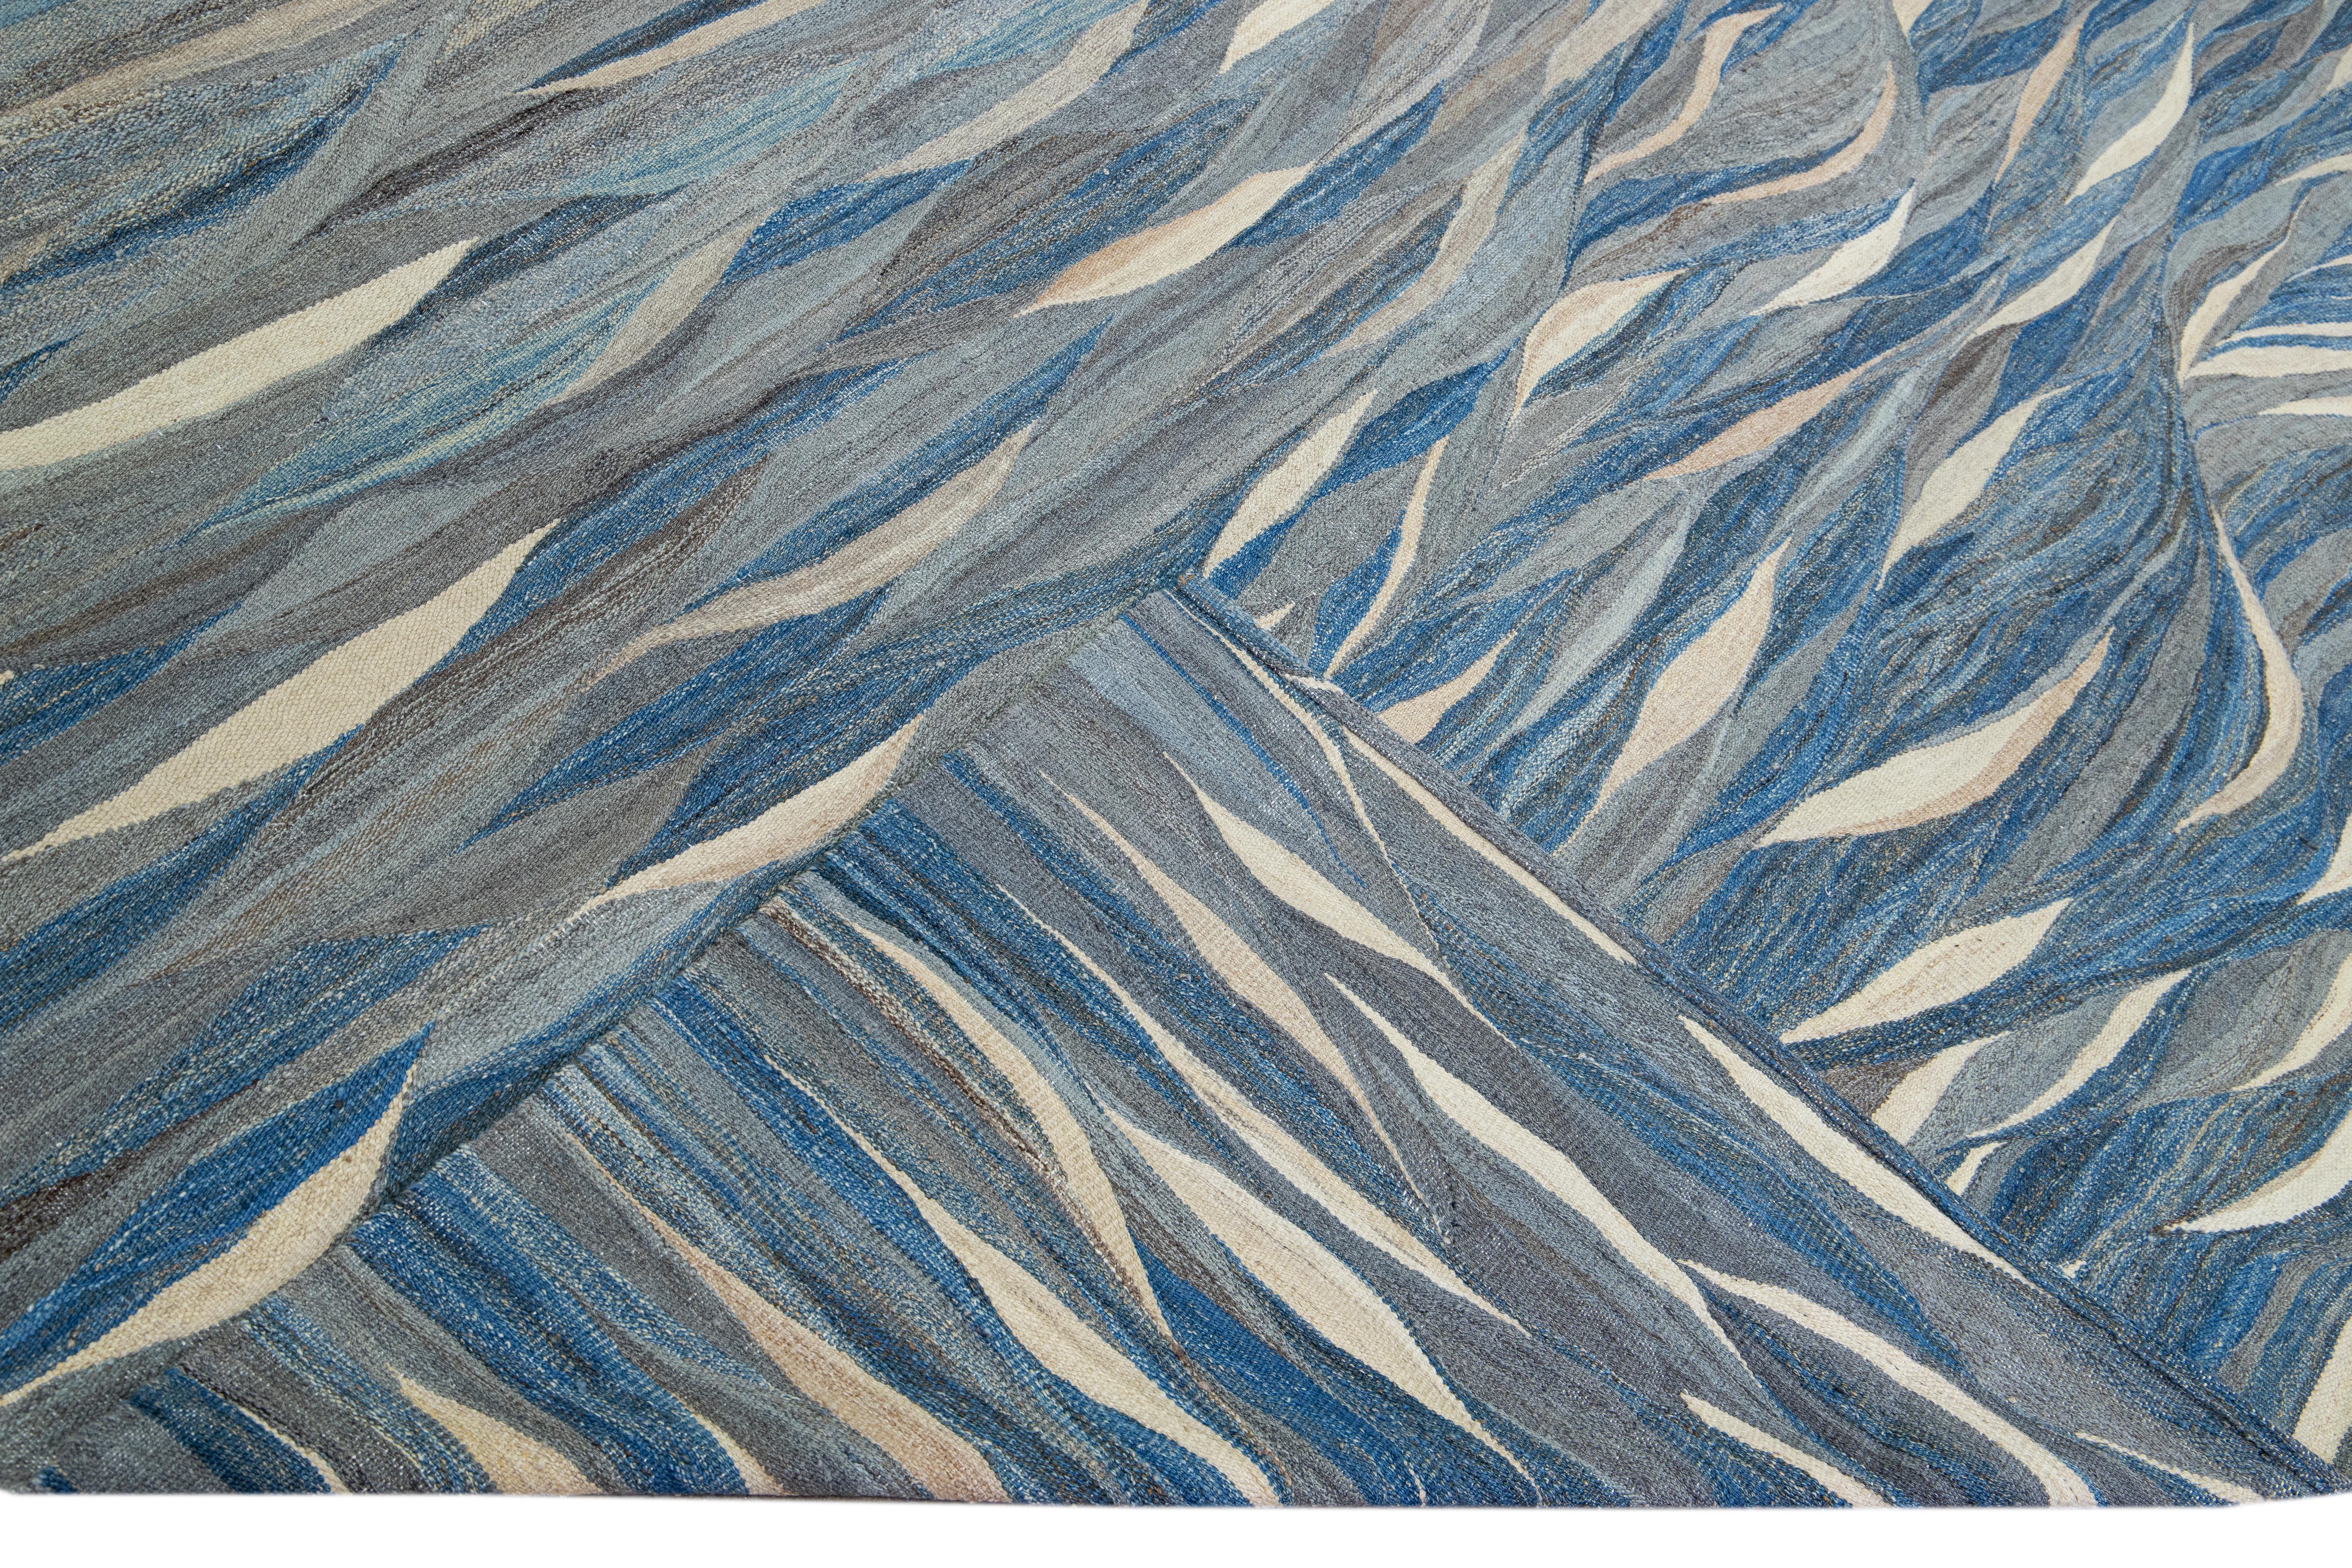 Magnifique tapis Kilim moderne en laine tissé à plat, fait à la main, avec un champ gris. Ce tapis Kilim a des accents bleus et beiges dans un magnifique design expressionniste abstrait.

Ce tapis mesure : 12' x 14'9